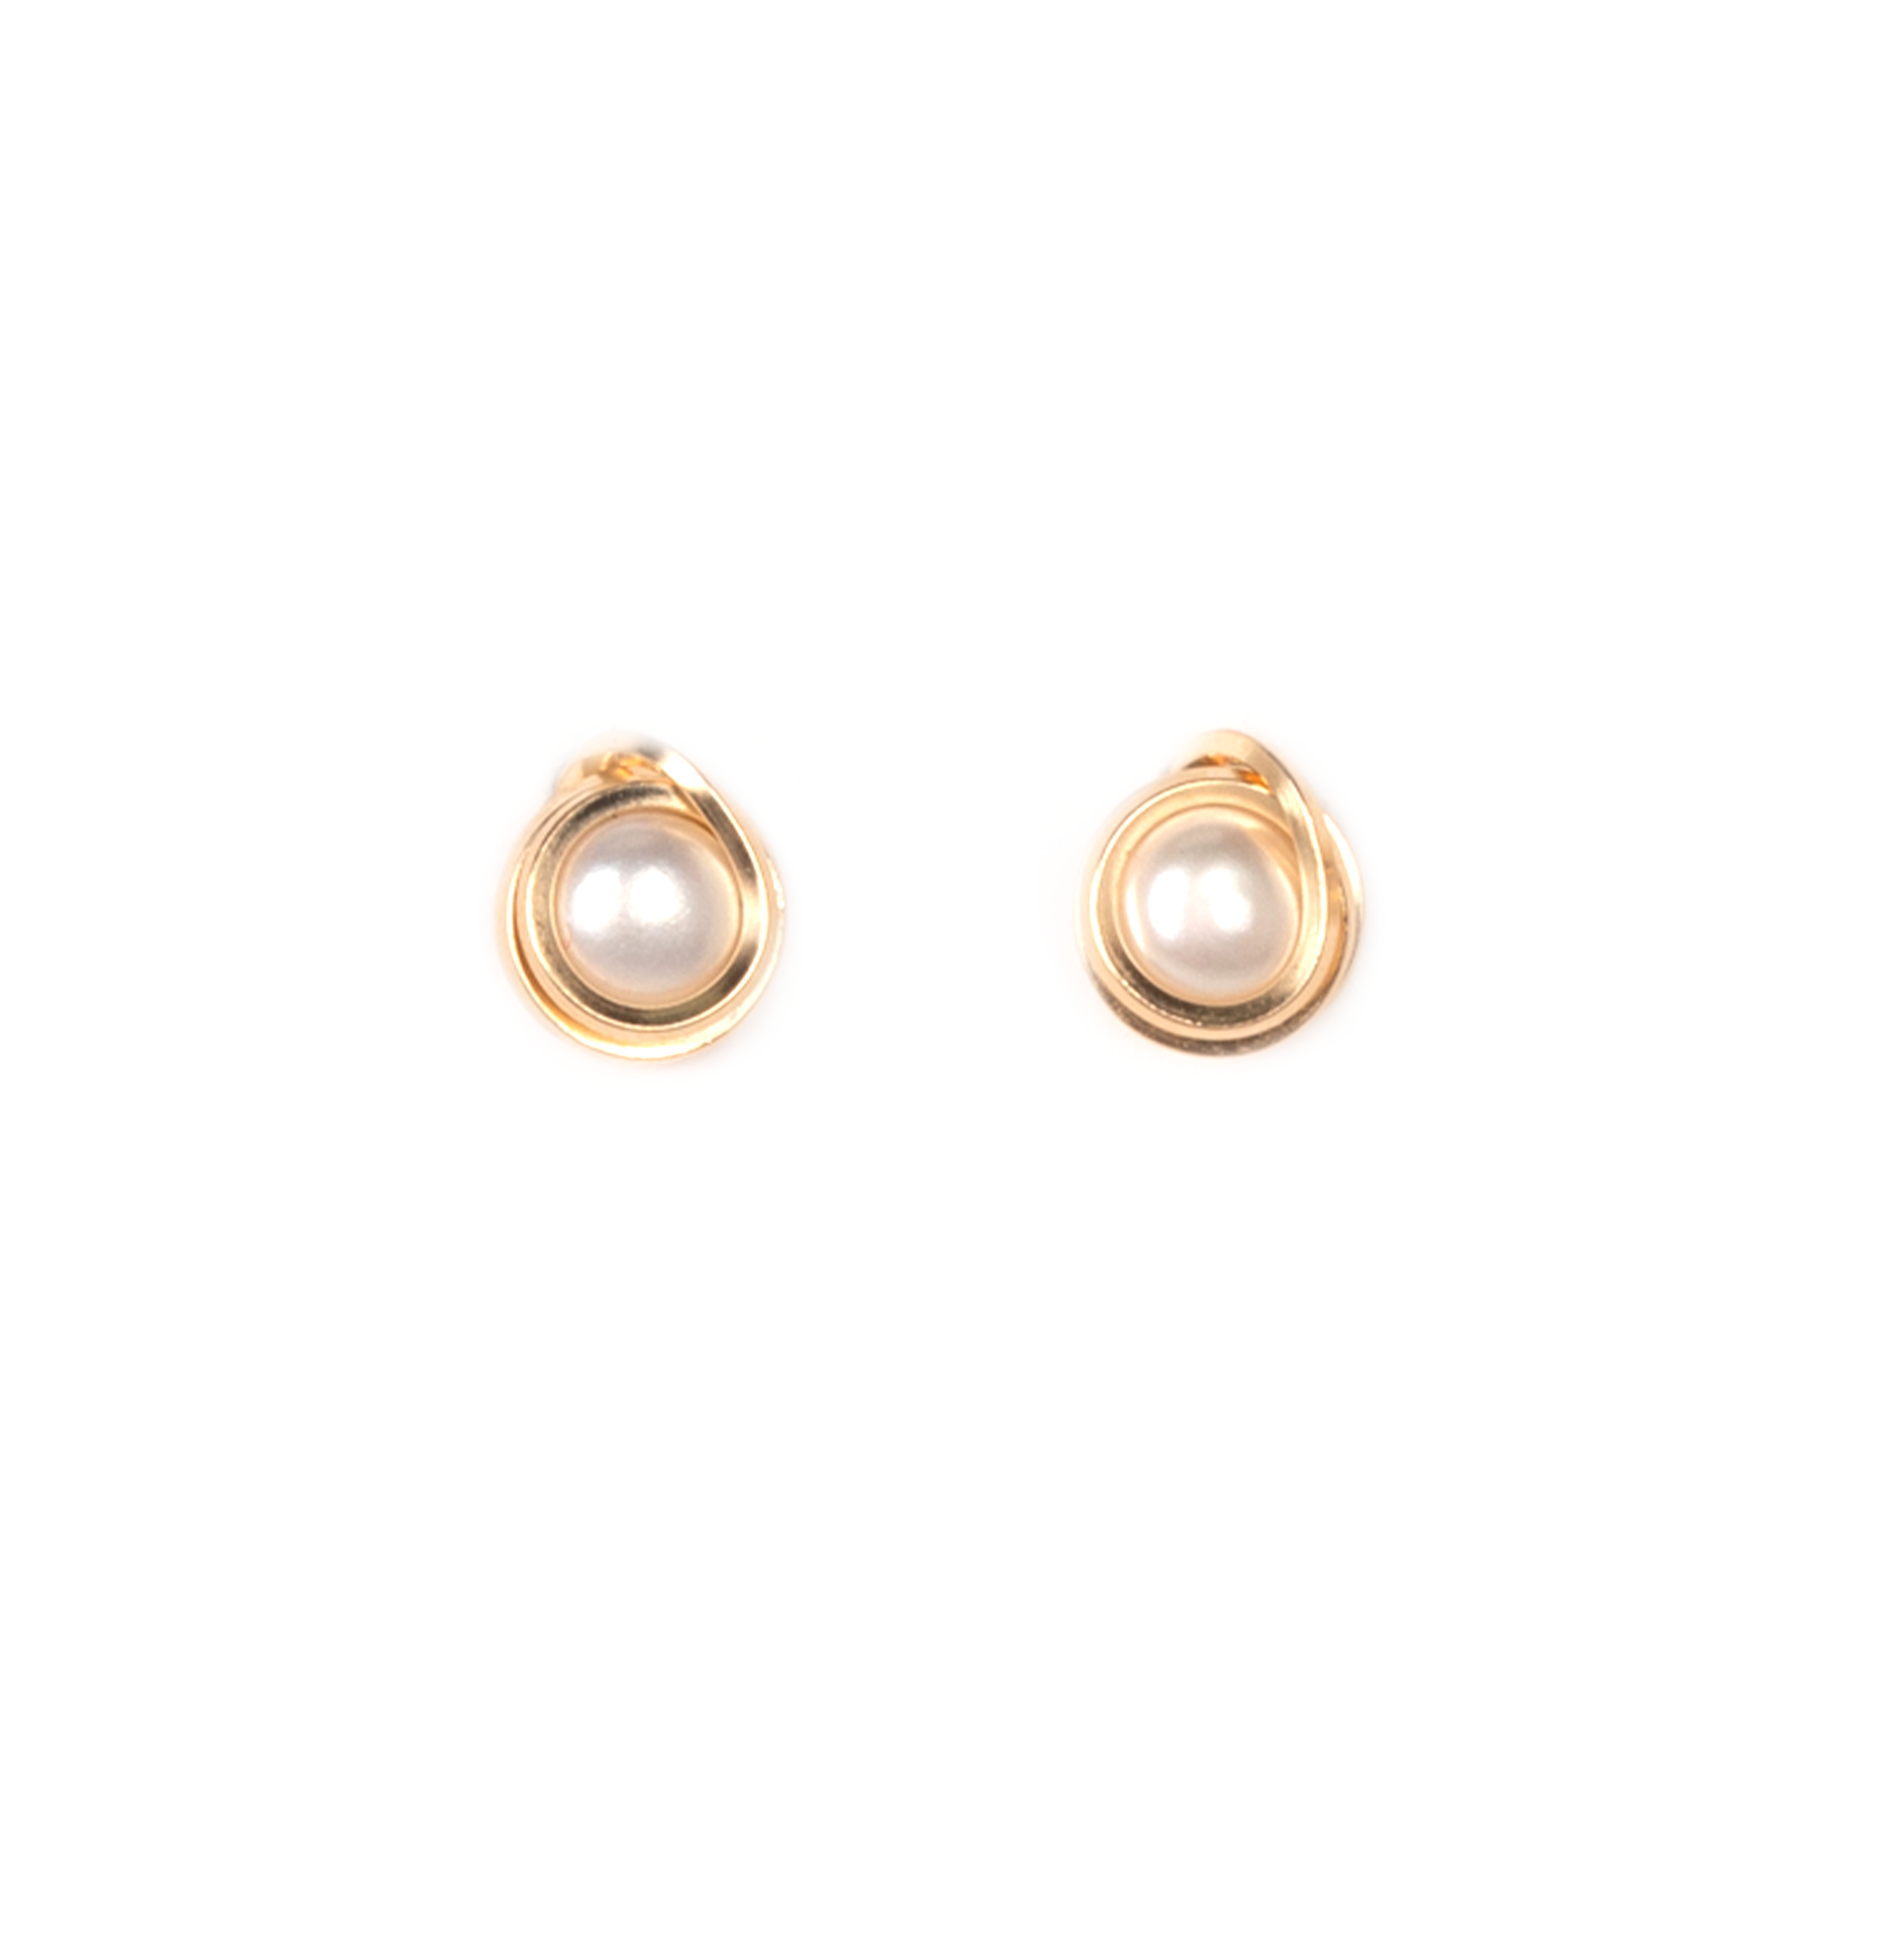 Carmencita Earrings #2 (6mm) - Pearl & Yellow Gold Earrings TARBAY   